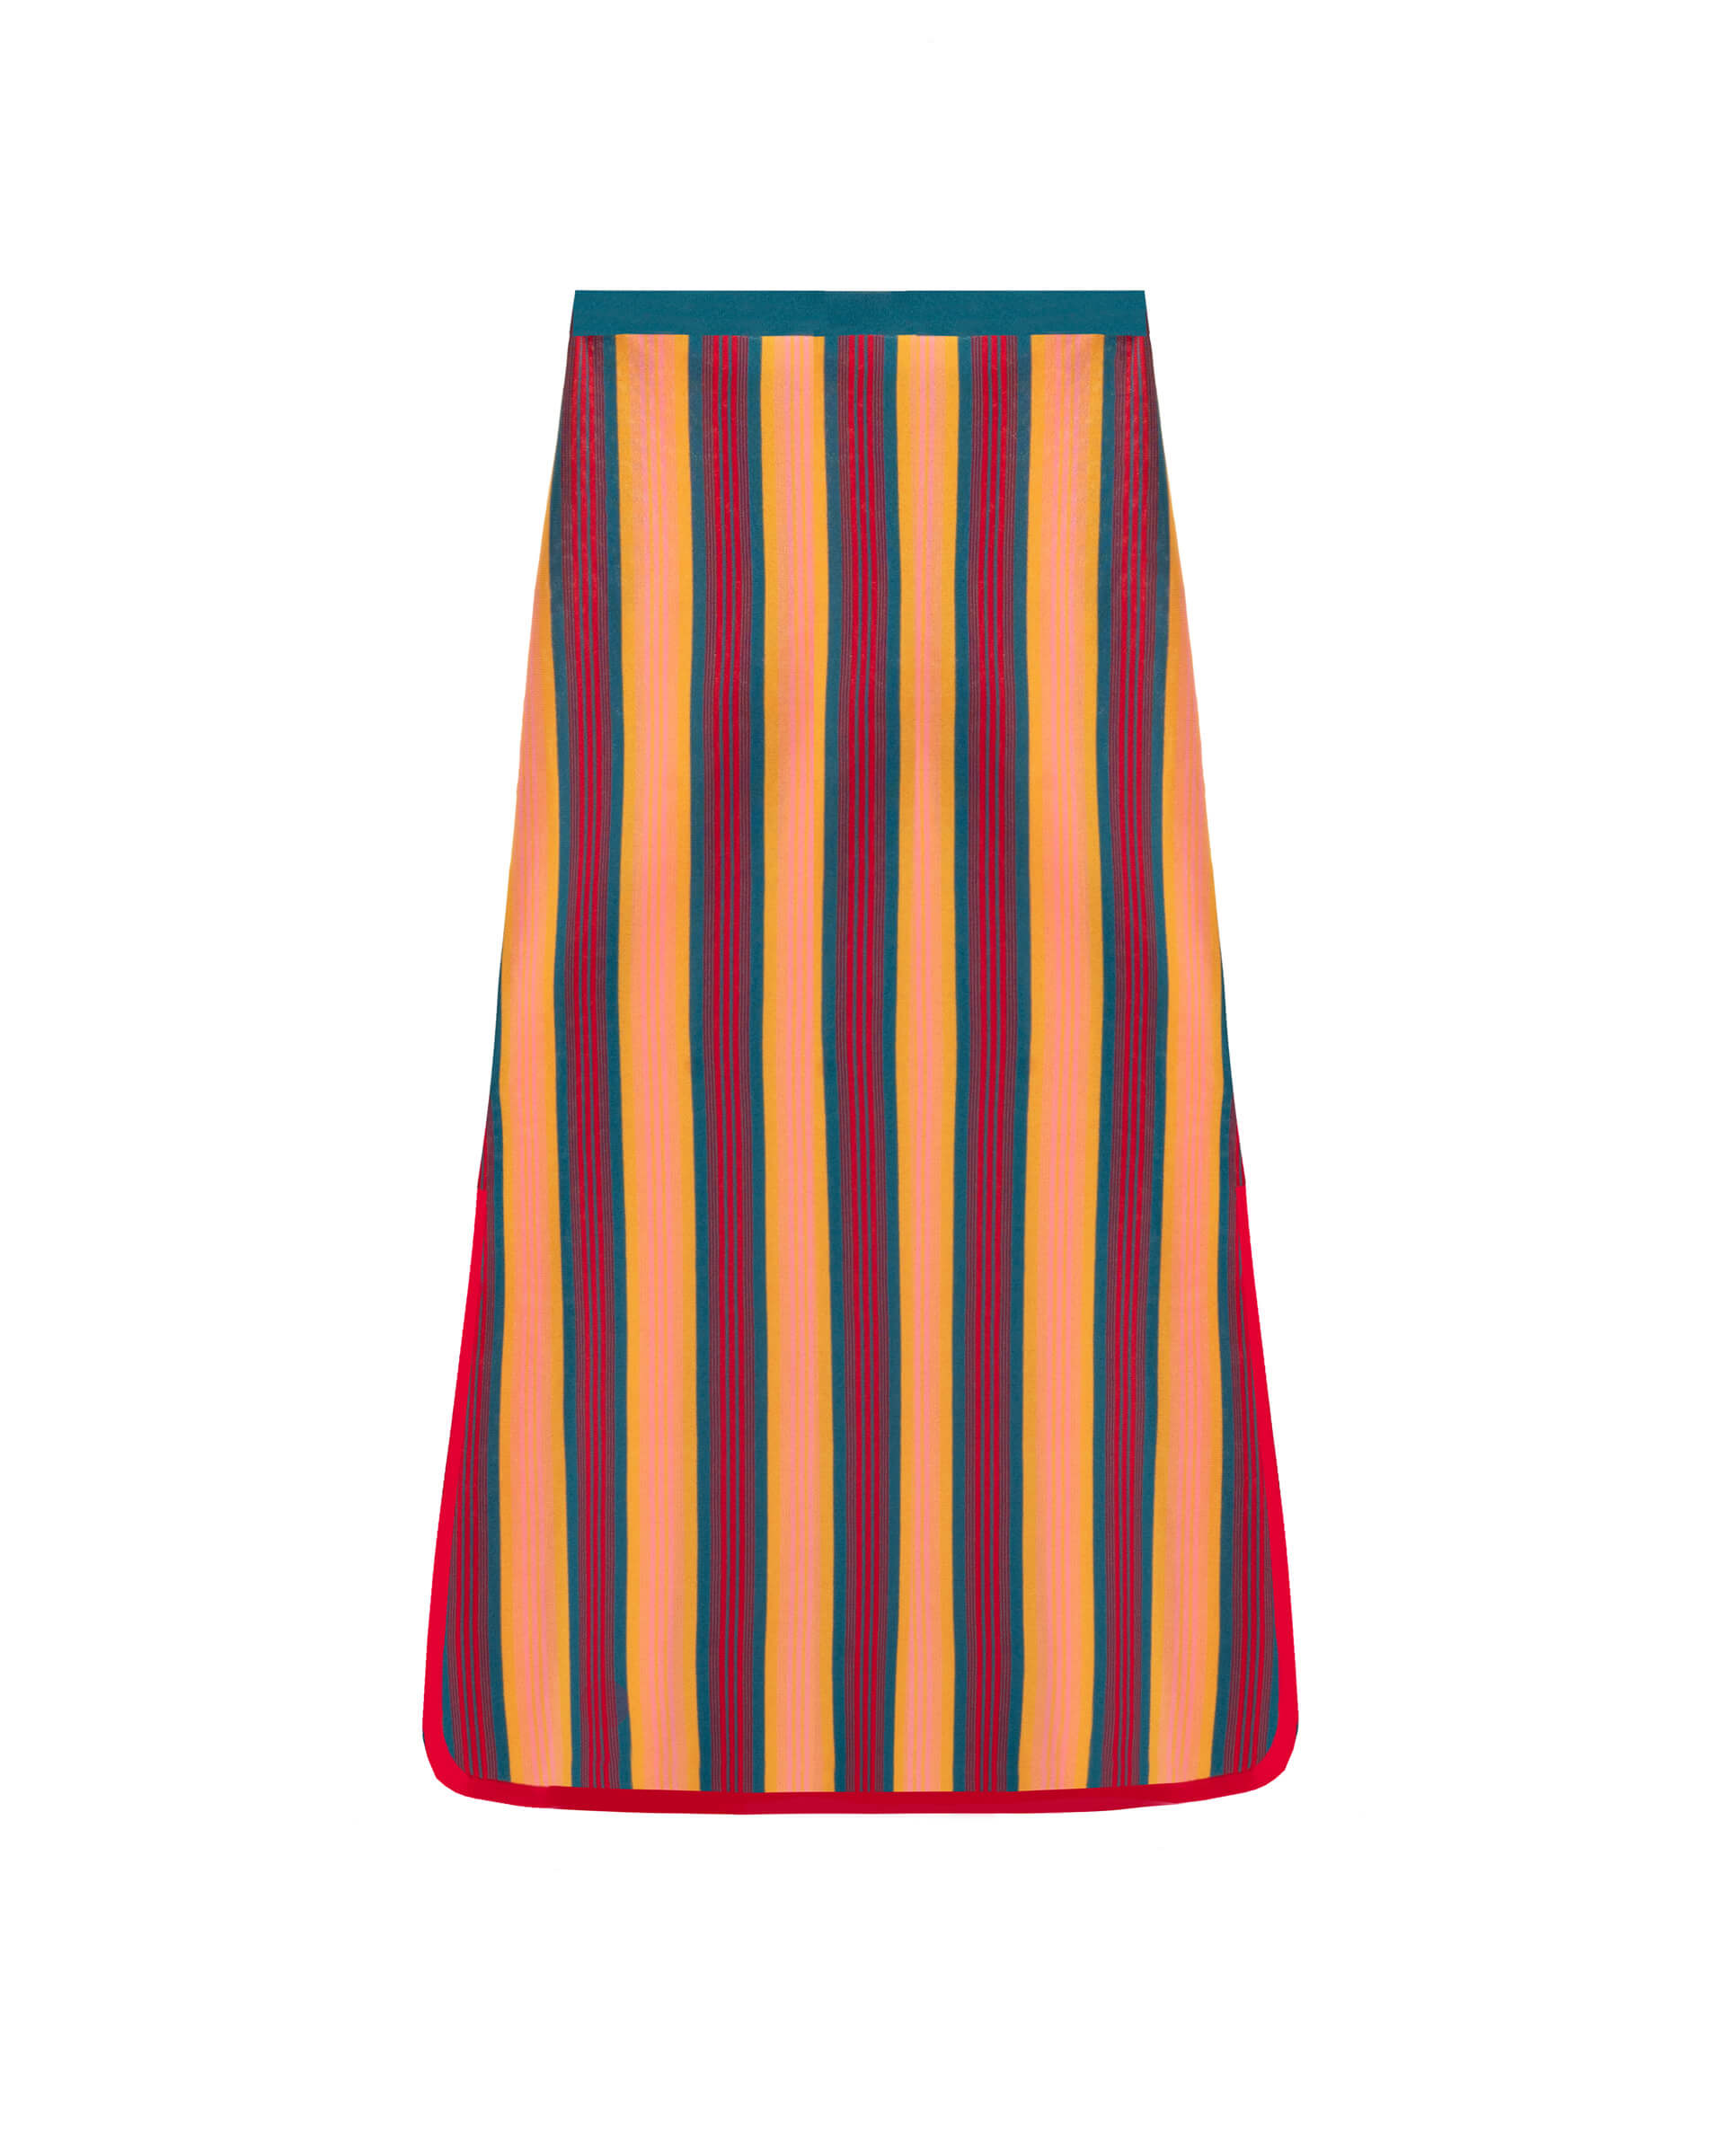 knitted baiadera skirt